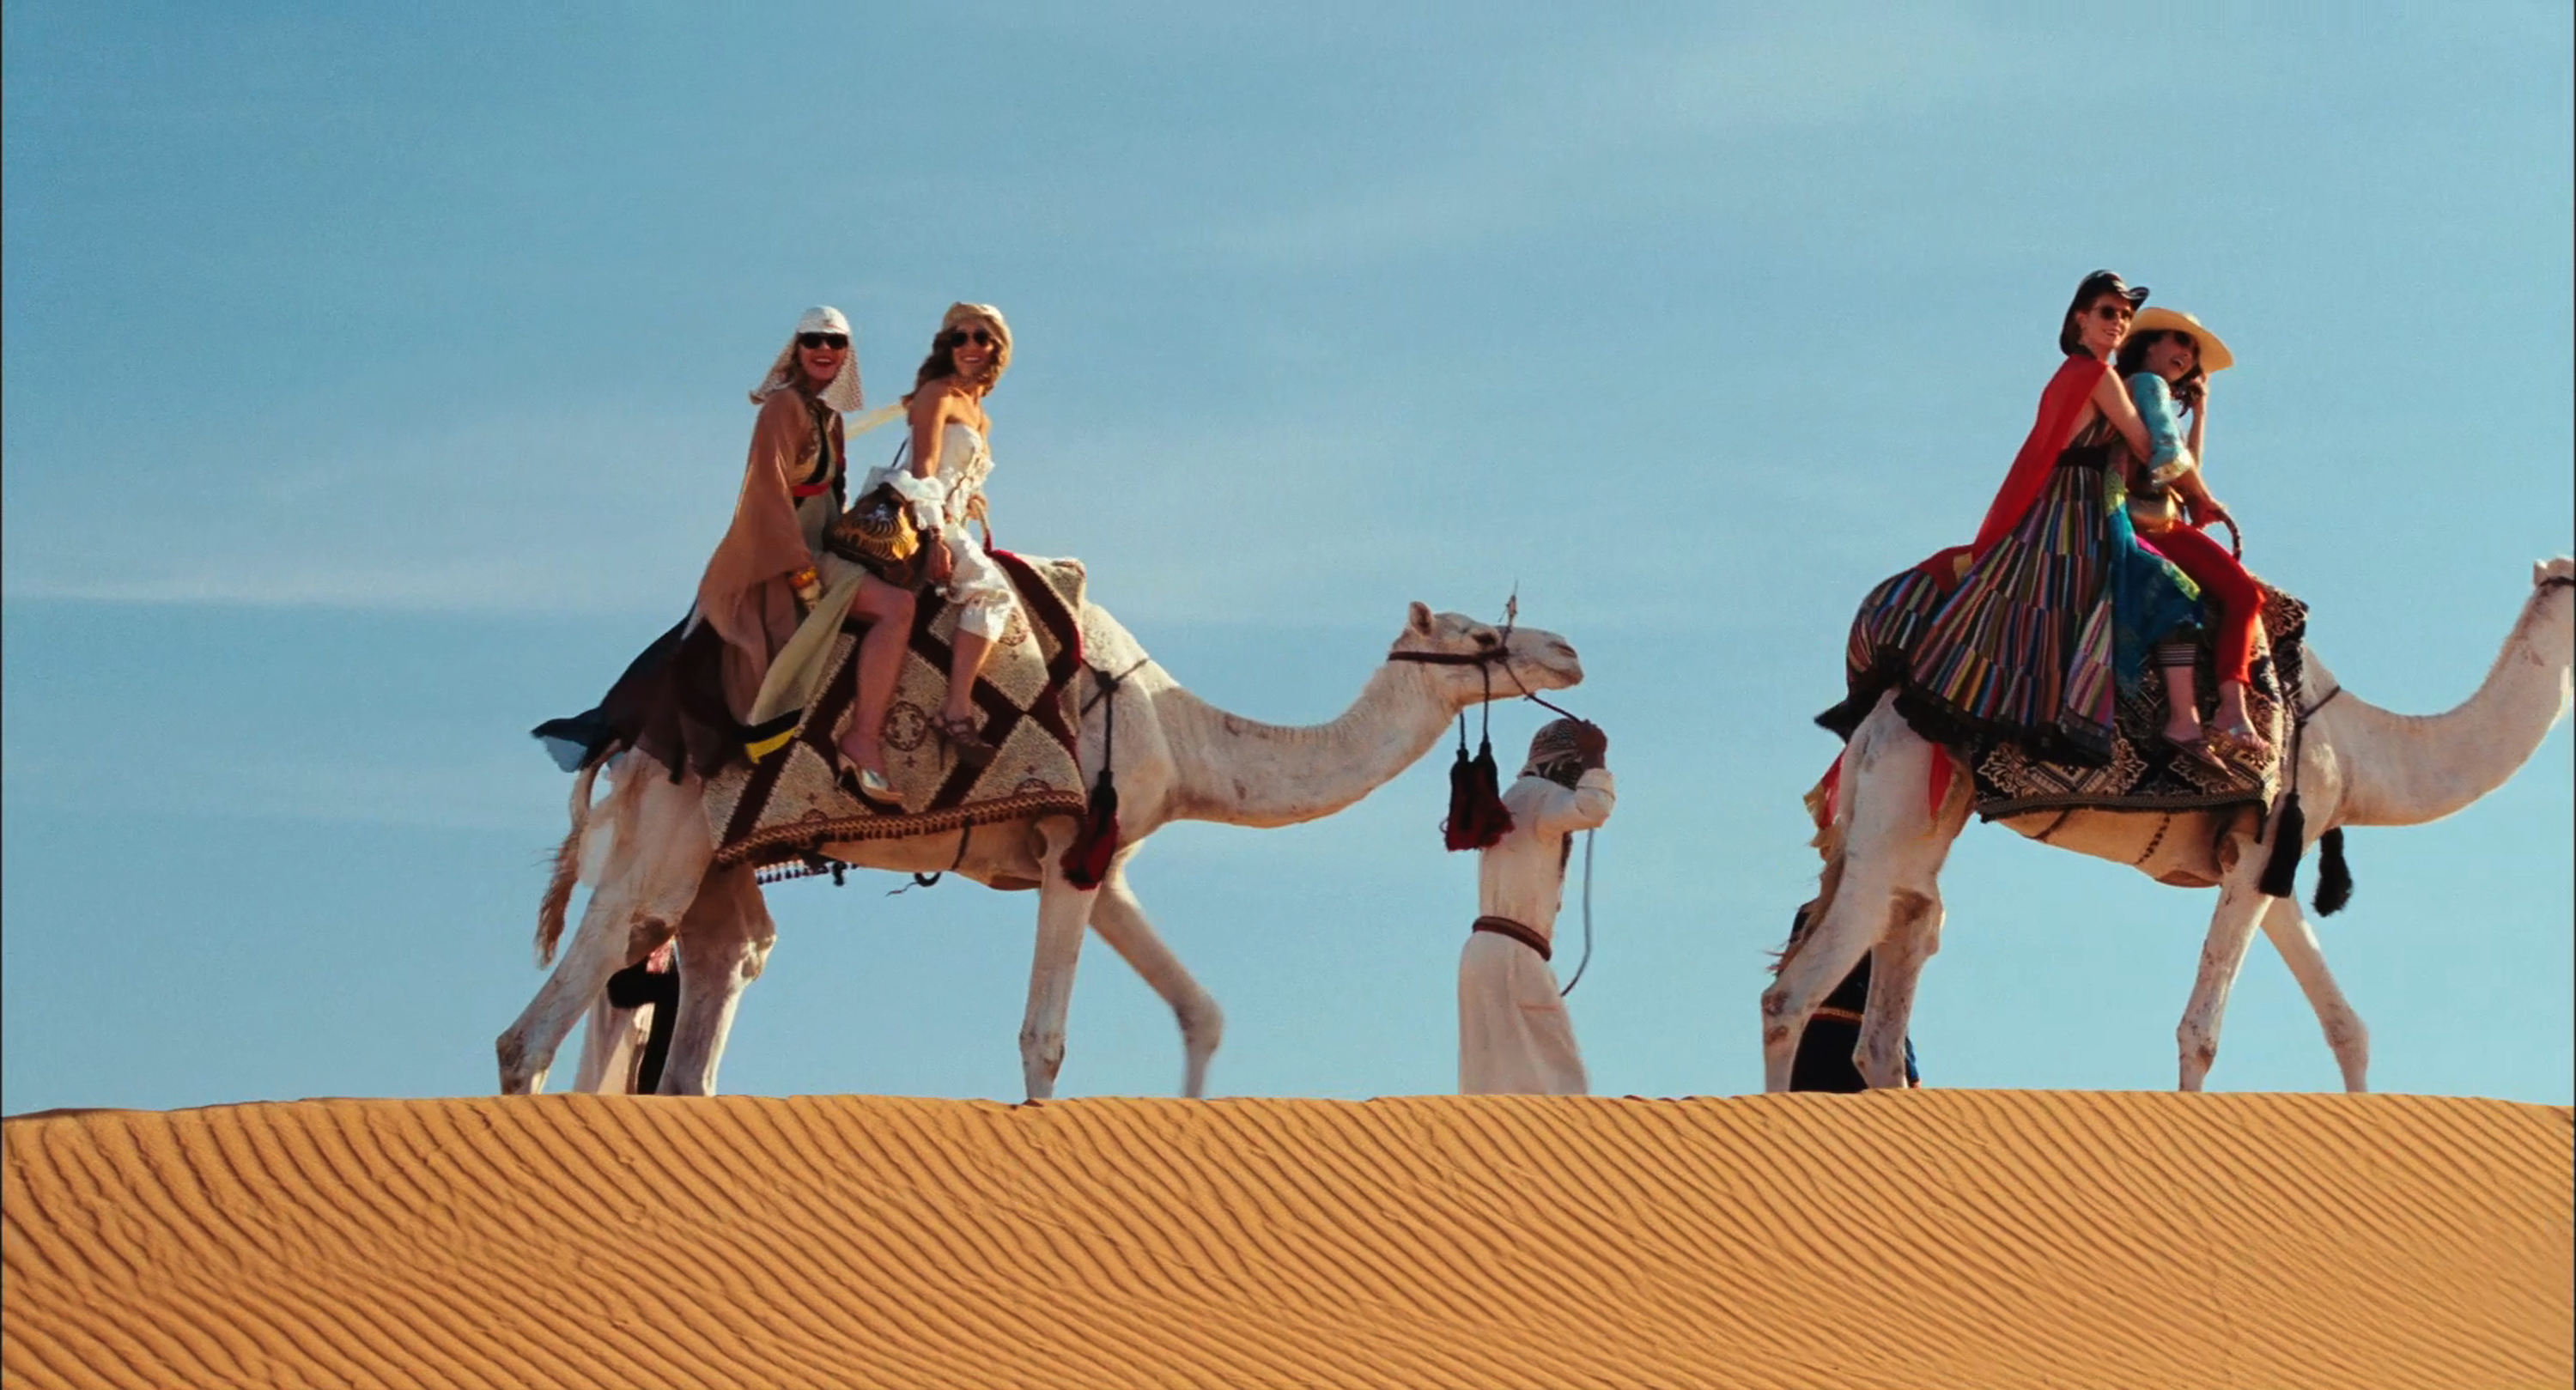 Tjejerna rider på kameler.